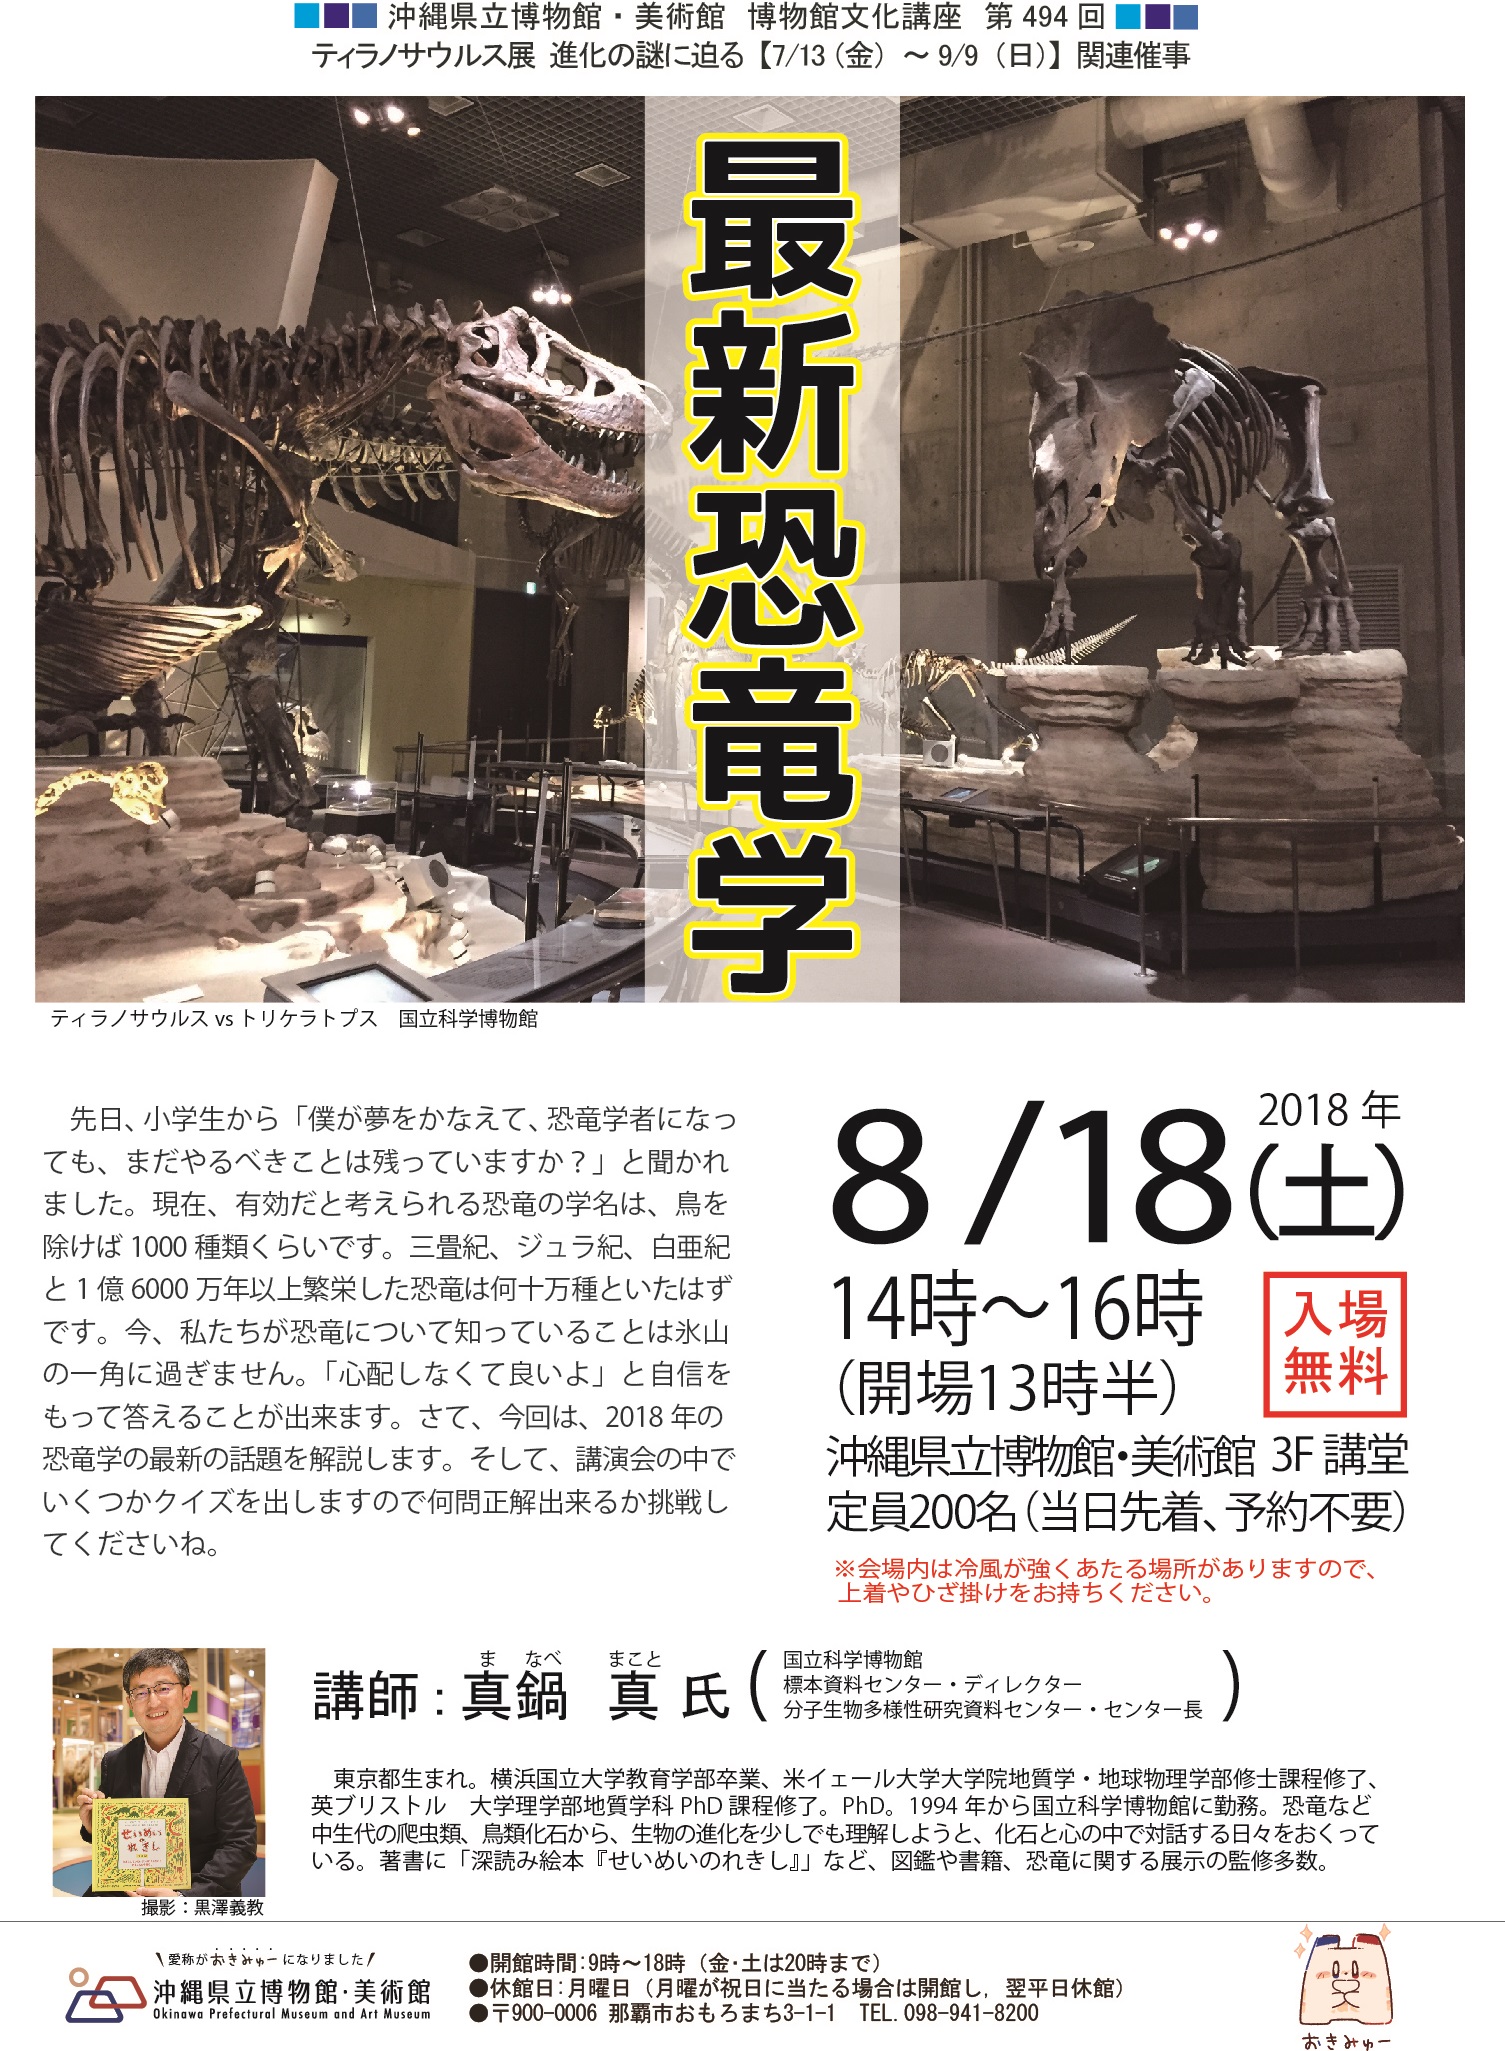 博物館文化講座「最新恐竜学」